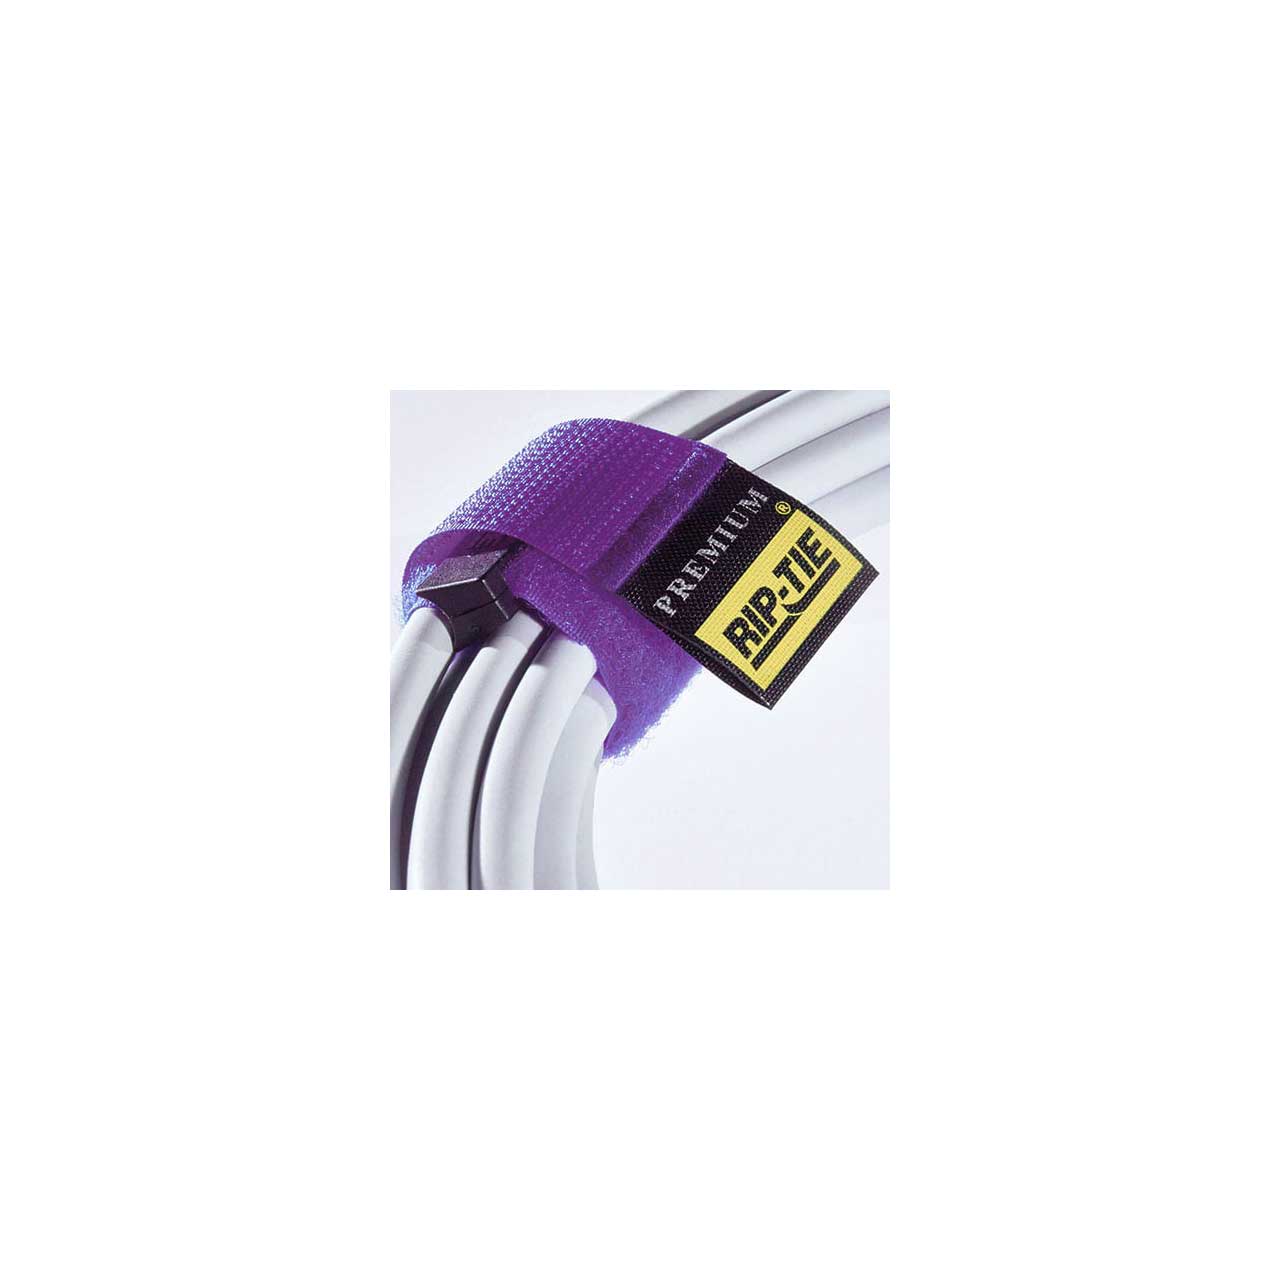 Rip-Tie RLH-045-003-V 1 x 4.5-Inch Rip-Tie Rip-Lock Cable Wrap - 3 Pack - Violet  RLH-045-003-V